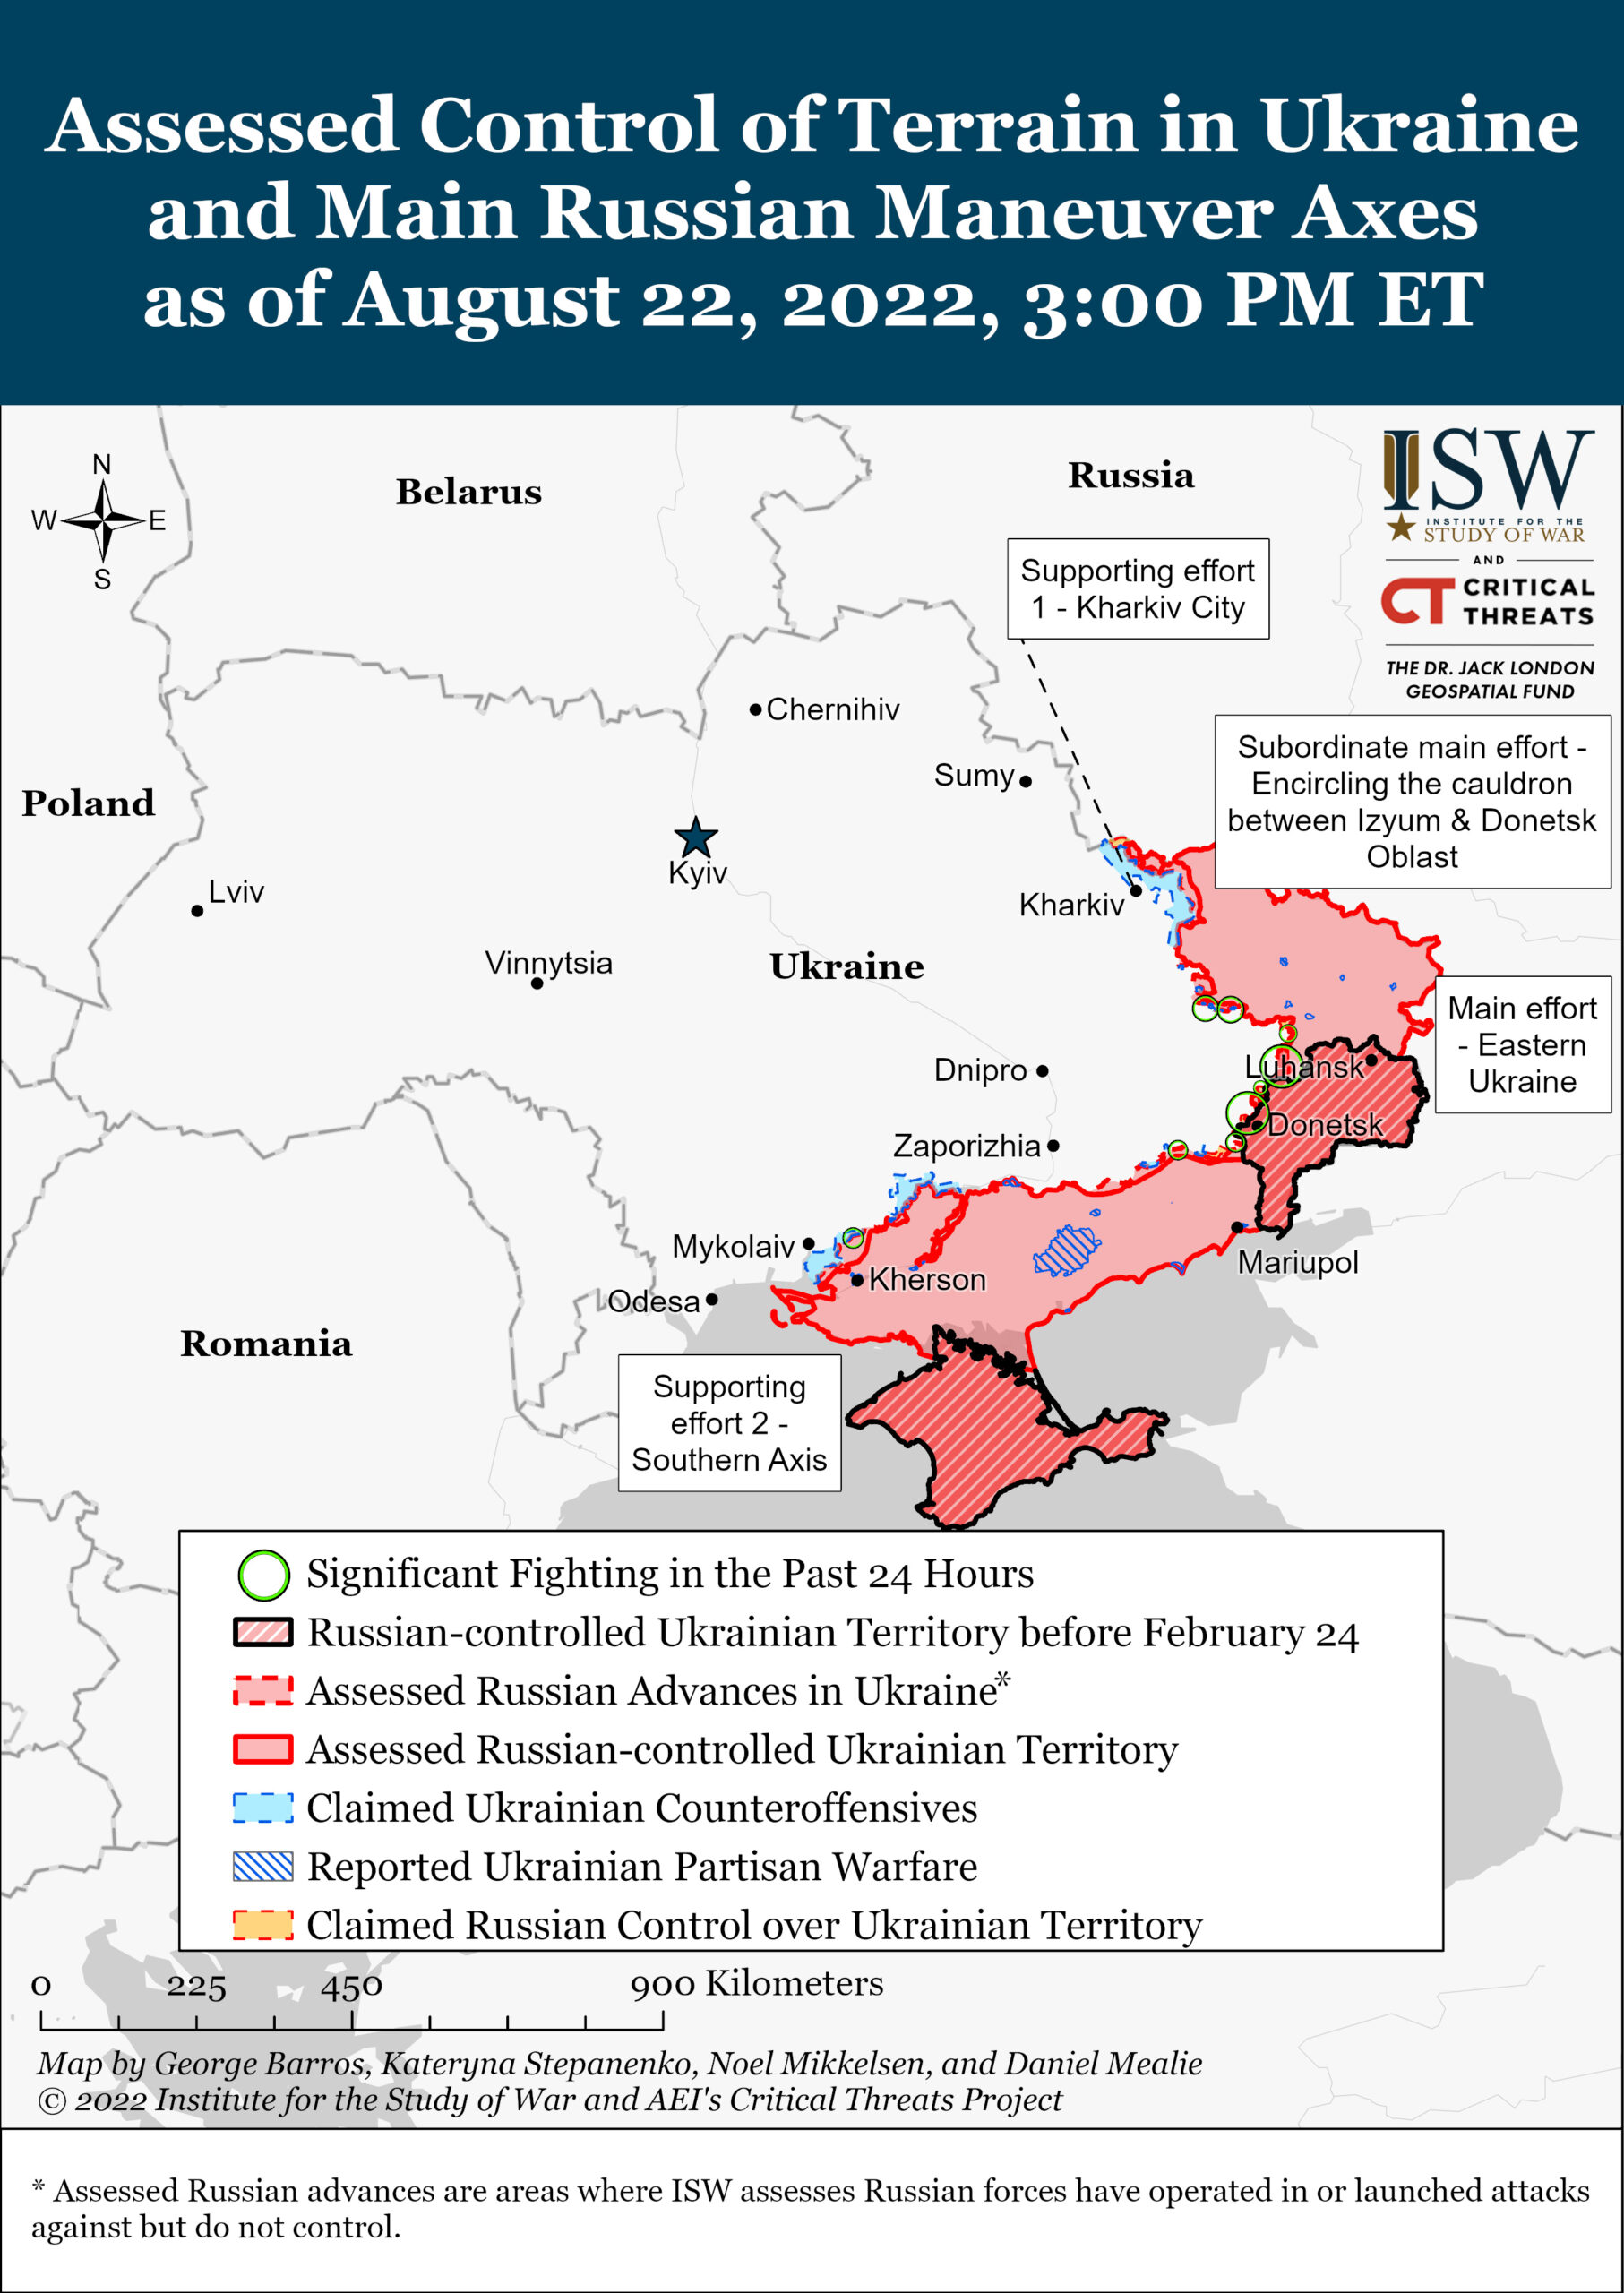 Шестой месяц войны Украины с Сауроном: перехват инициативы?